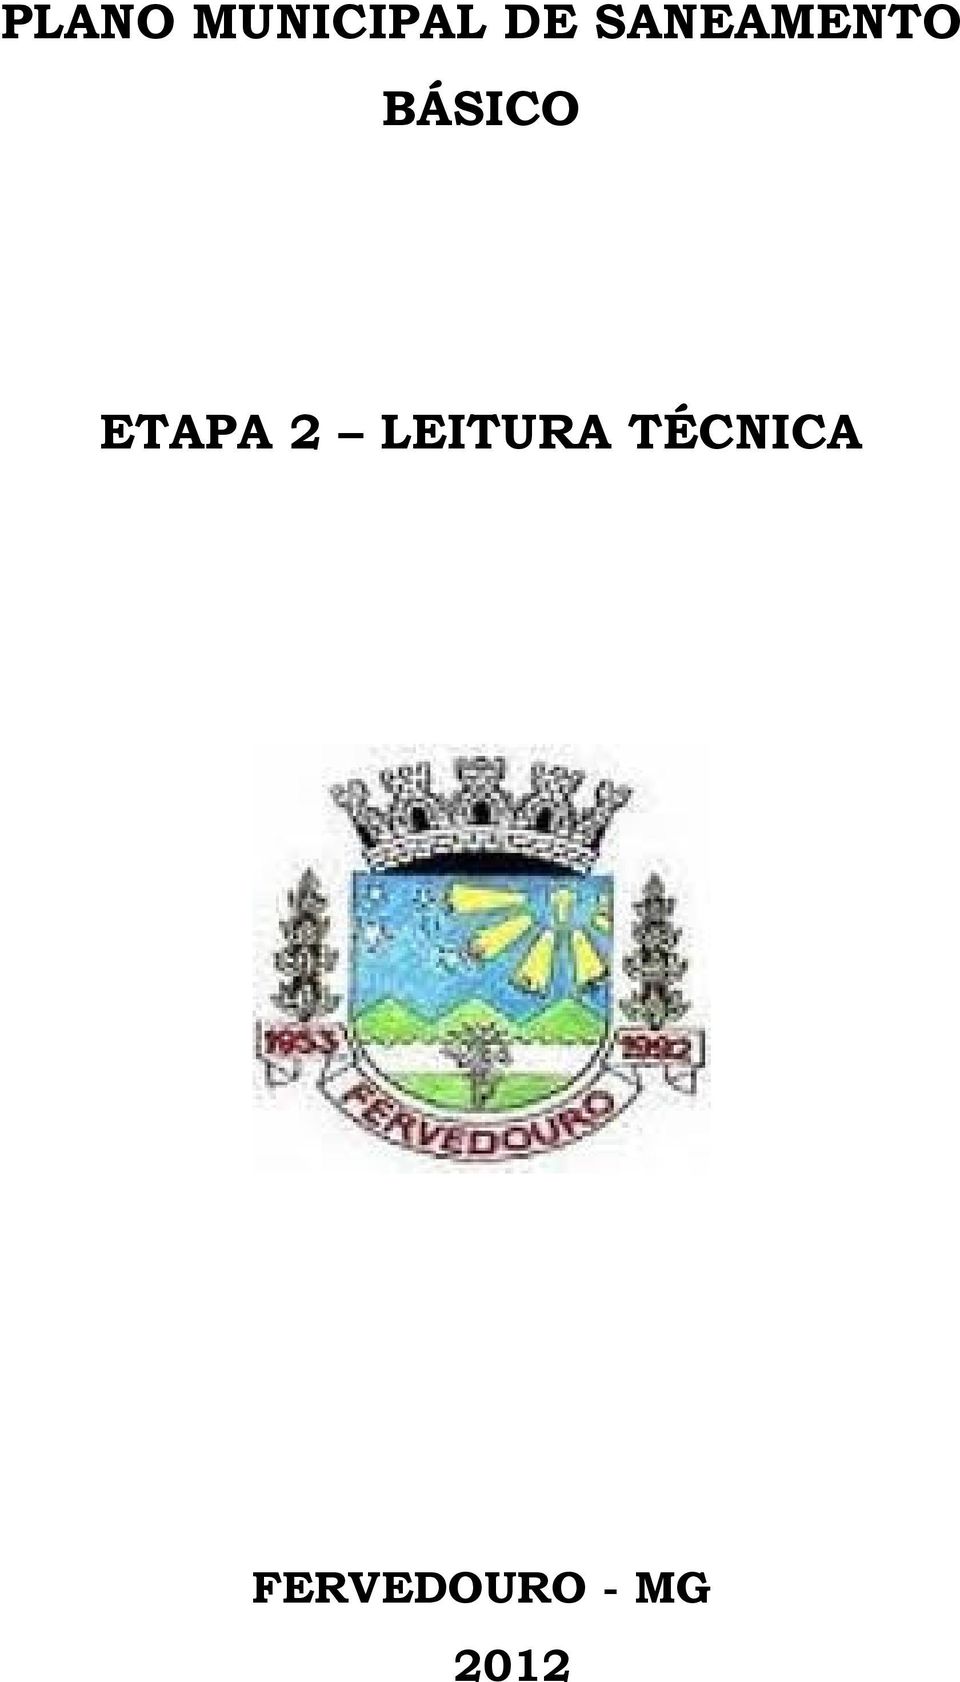 ETAPA 2 LEITURA